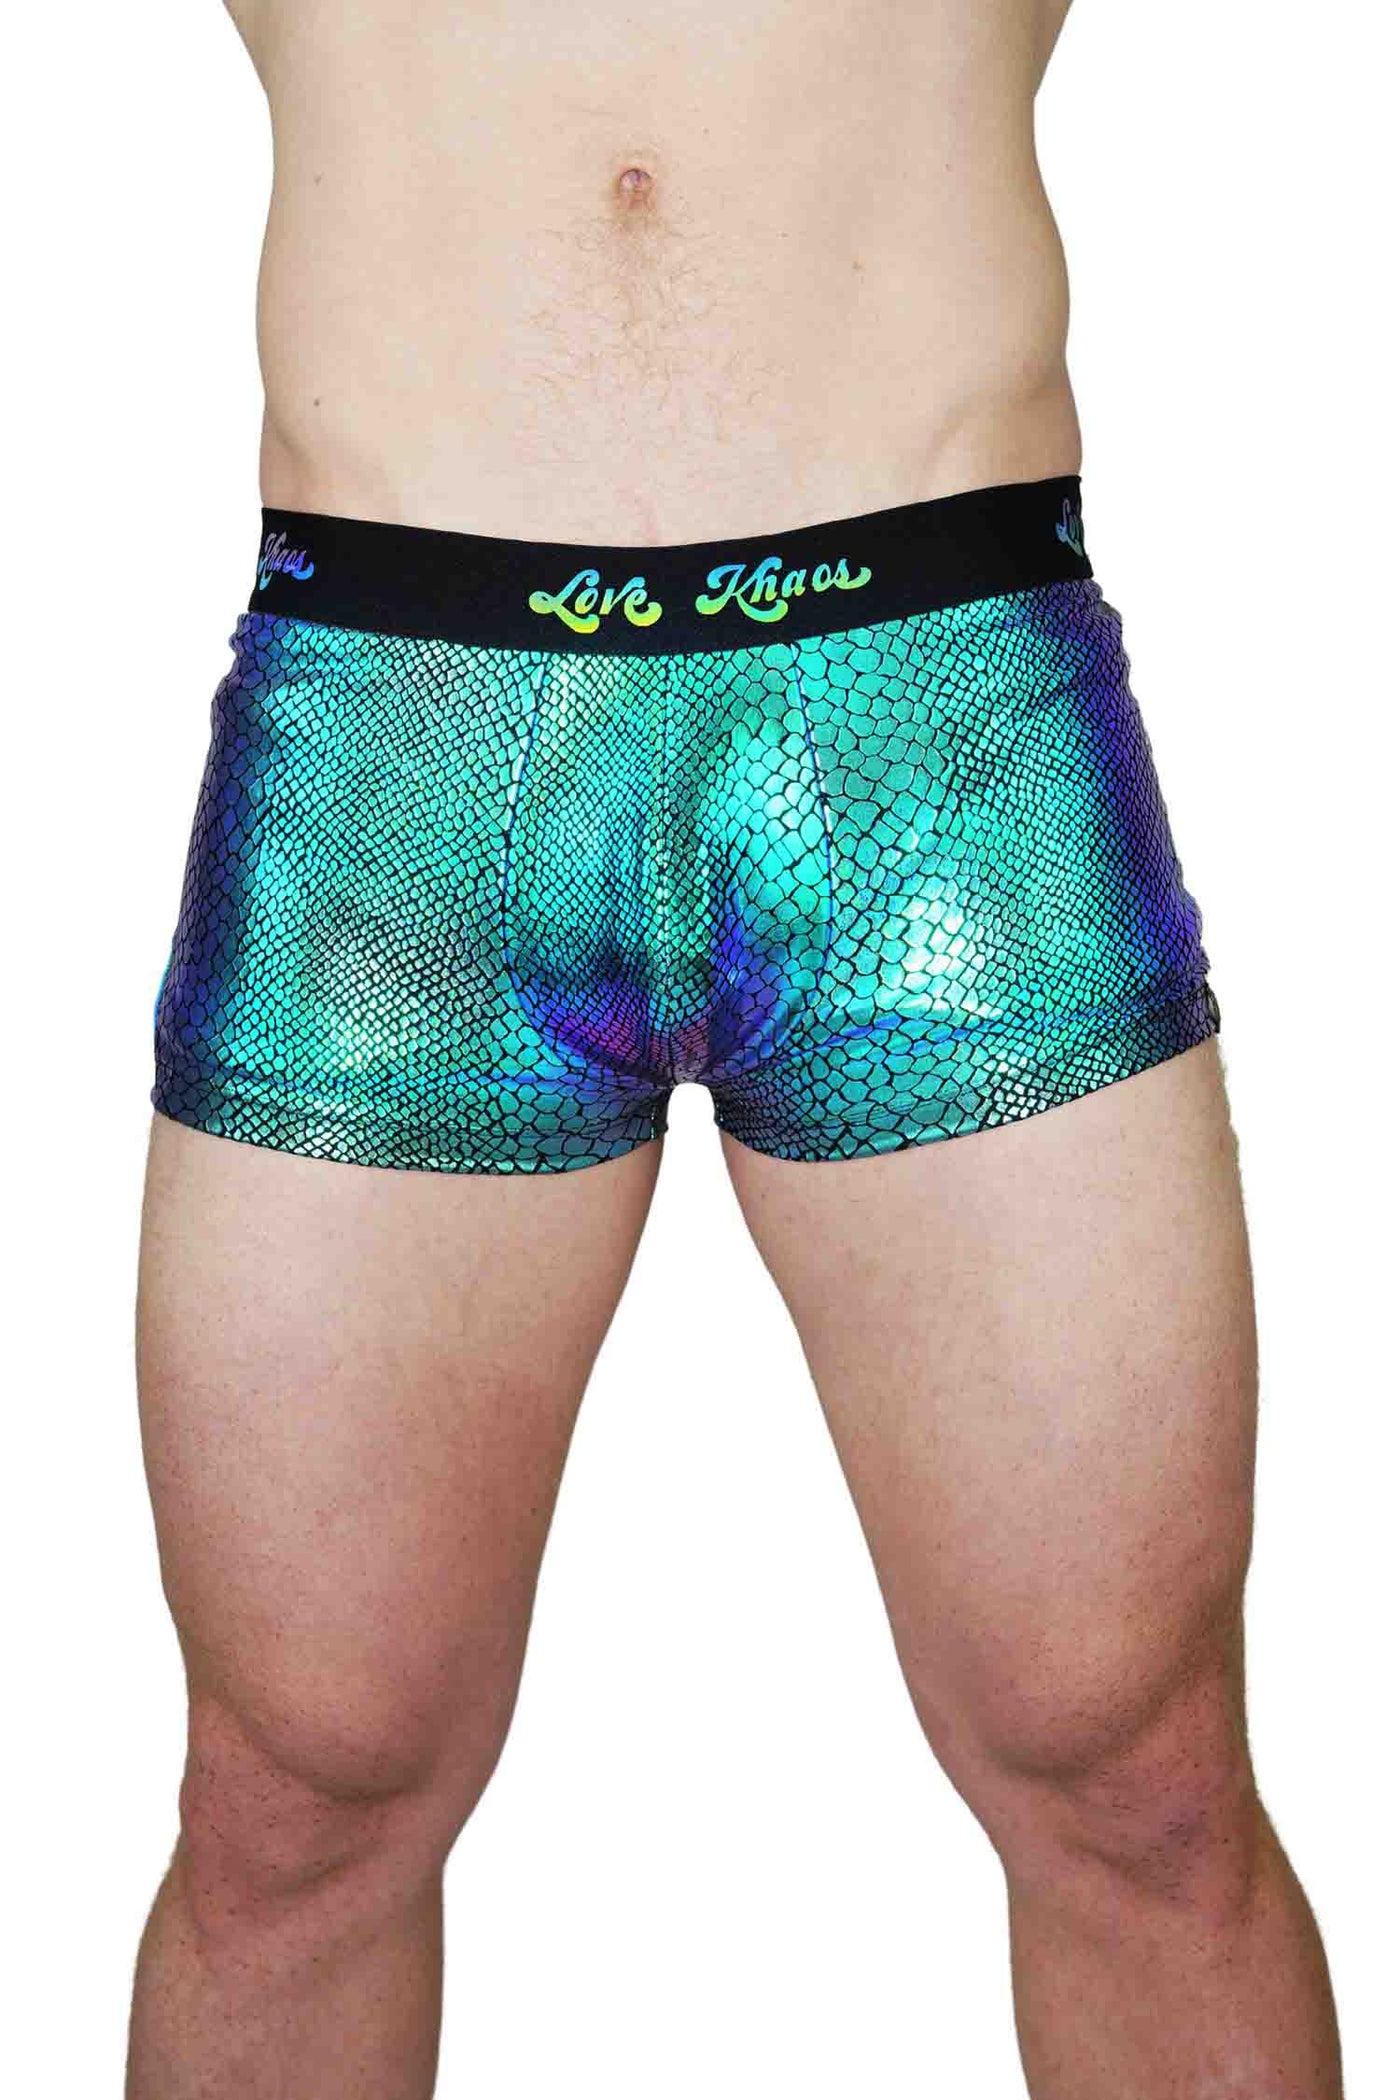 green snakeskin print booty shorts for guys from Love Khaos